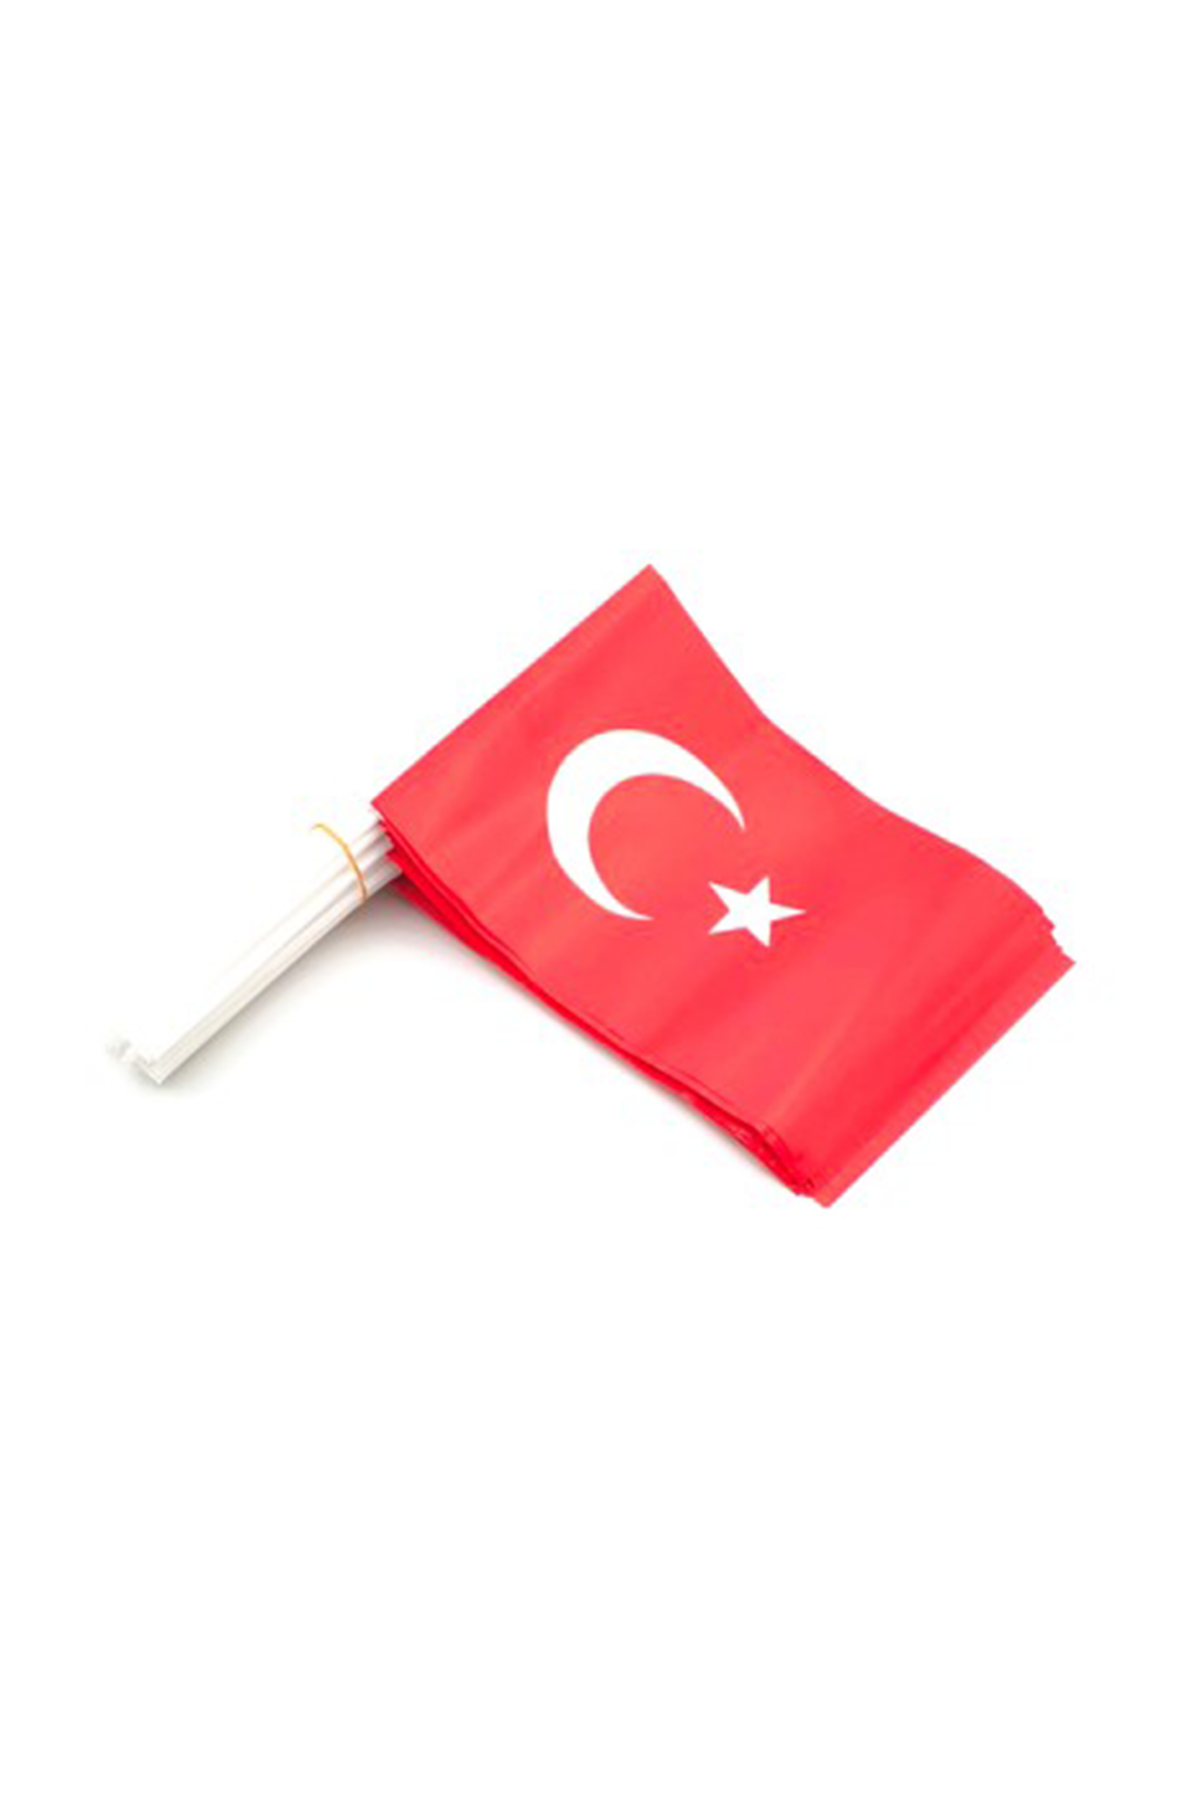 Küçük Boy Sopalı Türk Bayrağı 100 Adet